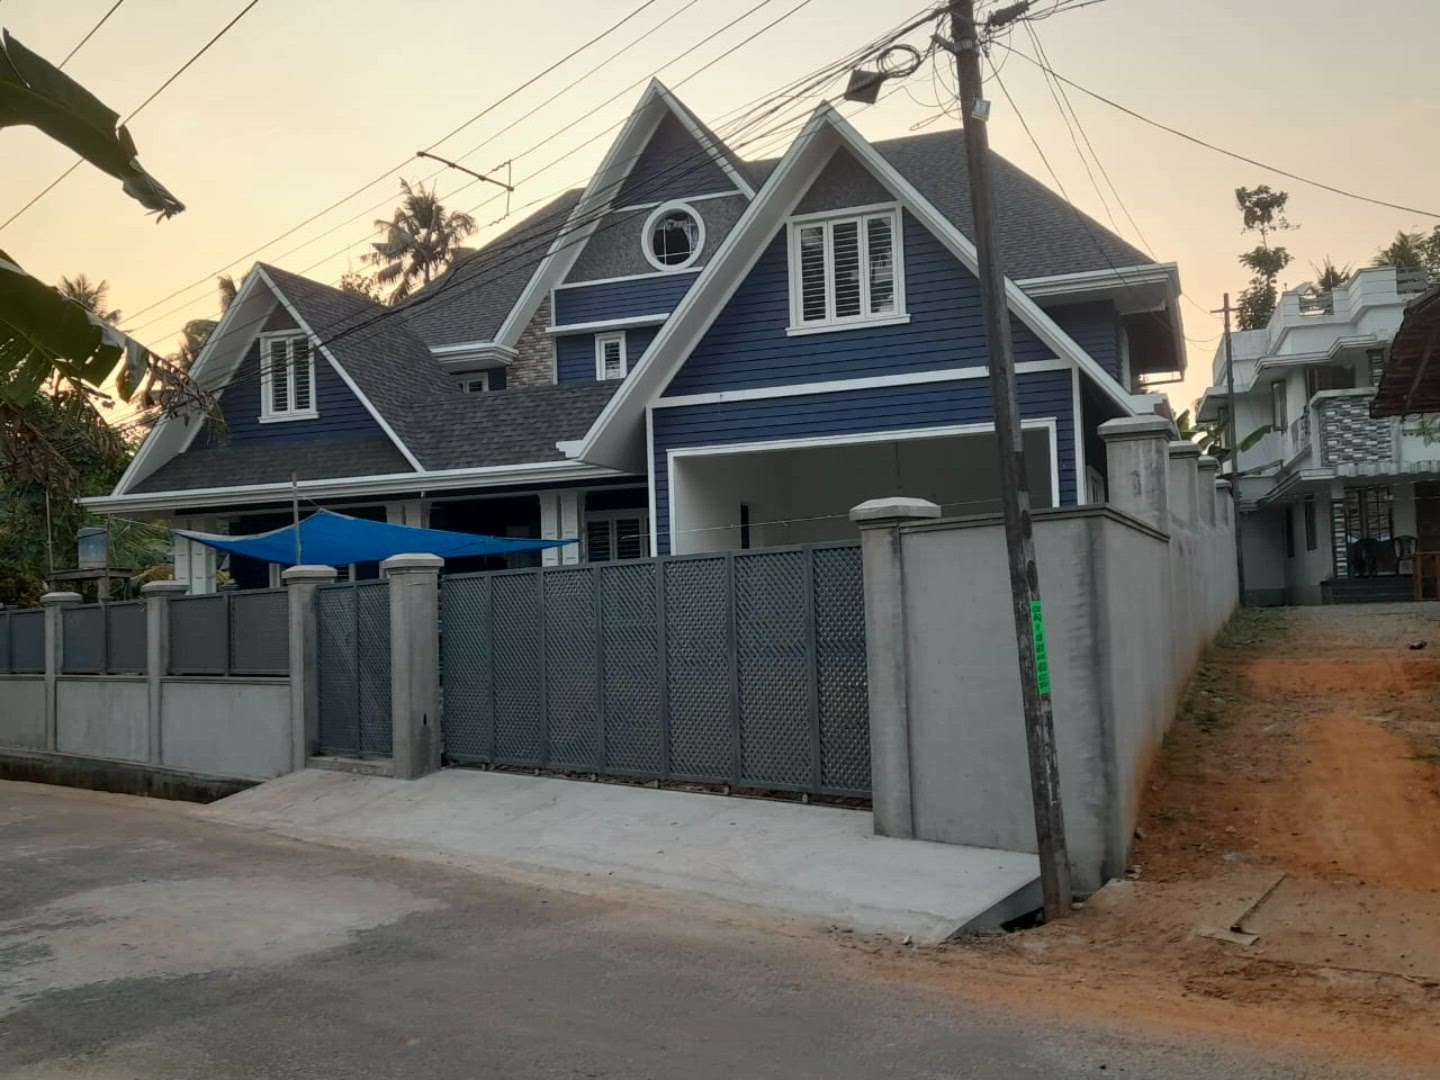 Nice house